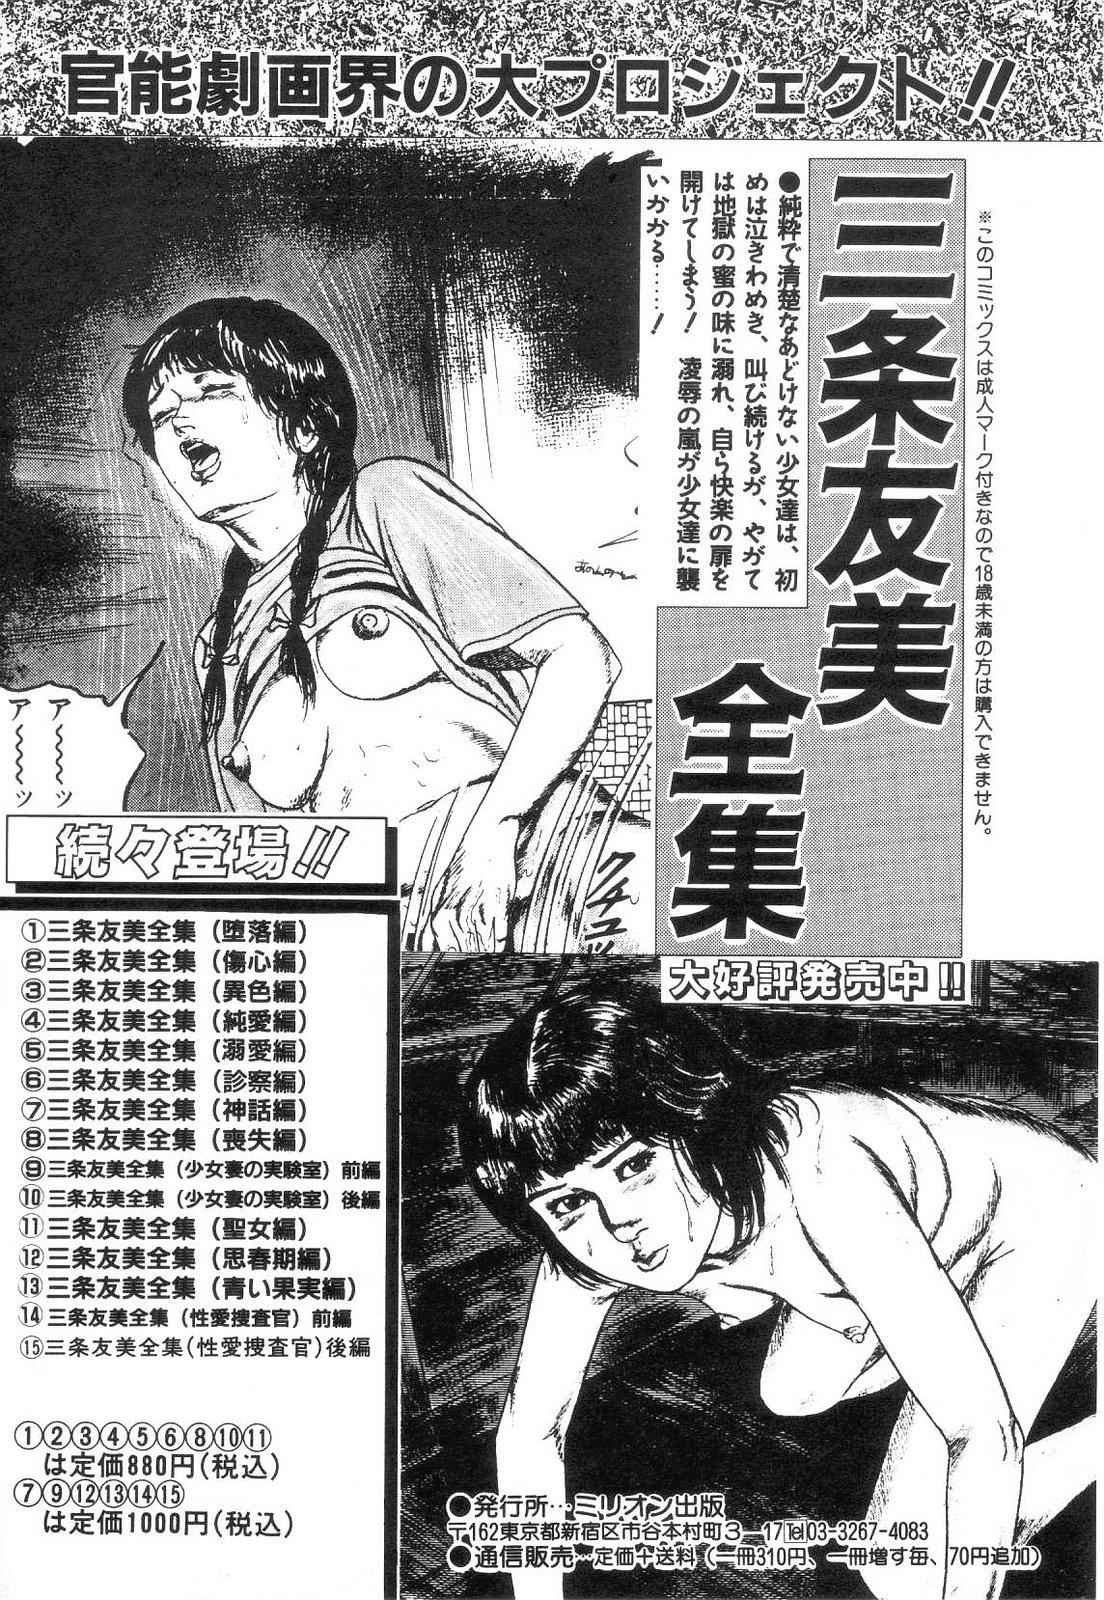 Shiro no Mokushiroku Vol. 4 - Bichiku Karen no Shou 204